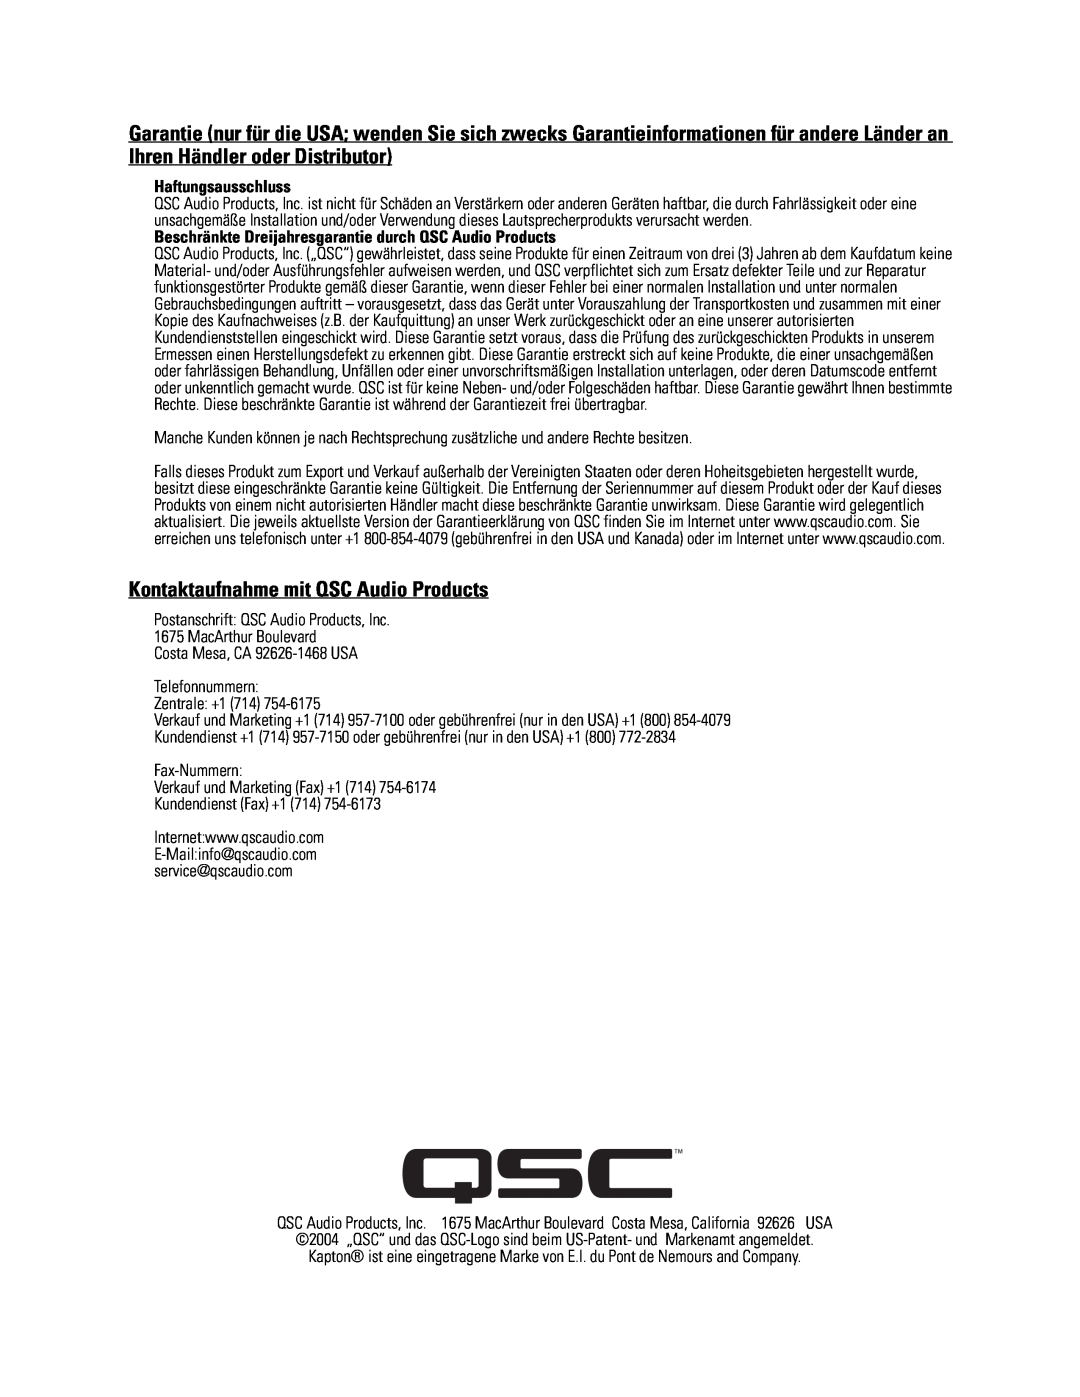 QSC Audio SC-322 specifications Kontaktaufnahme mit QSC Audio Products 